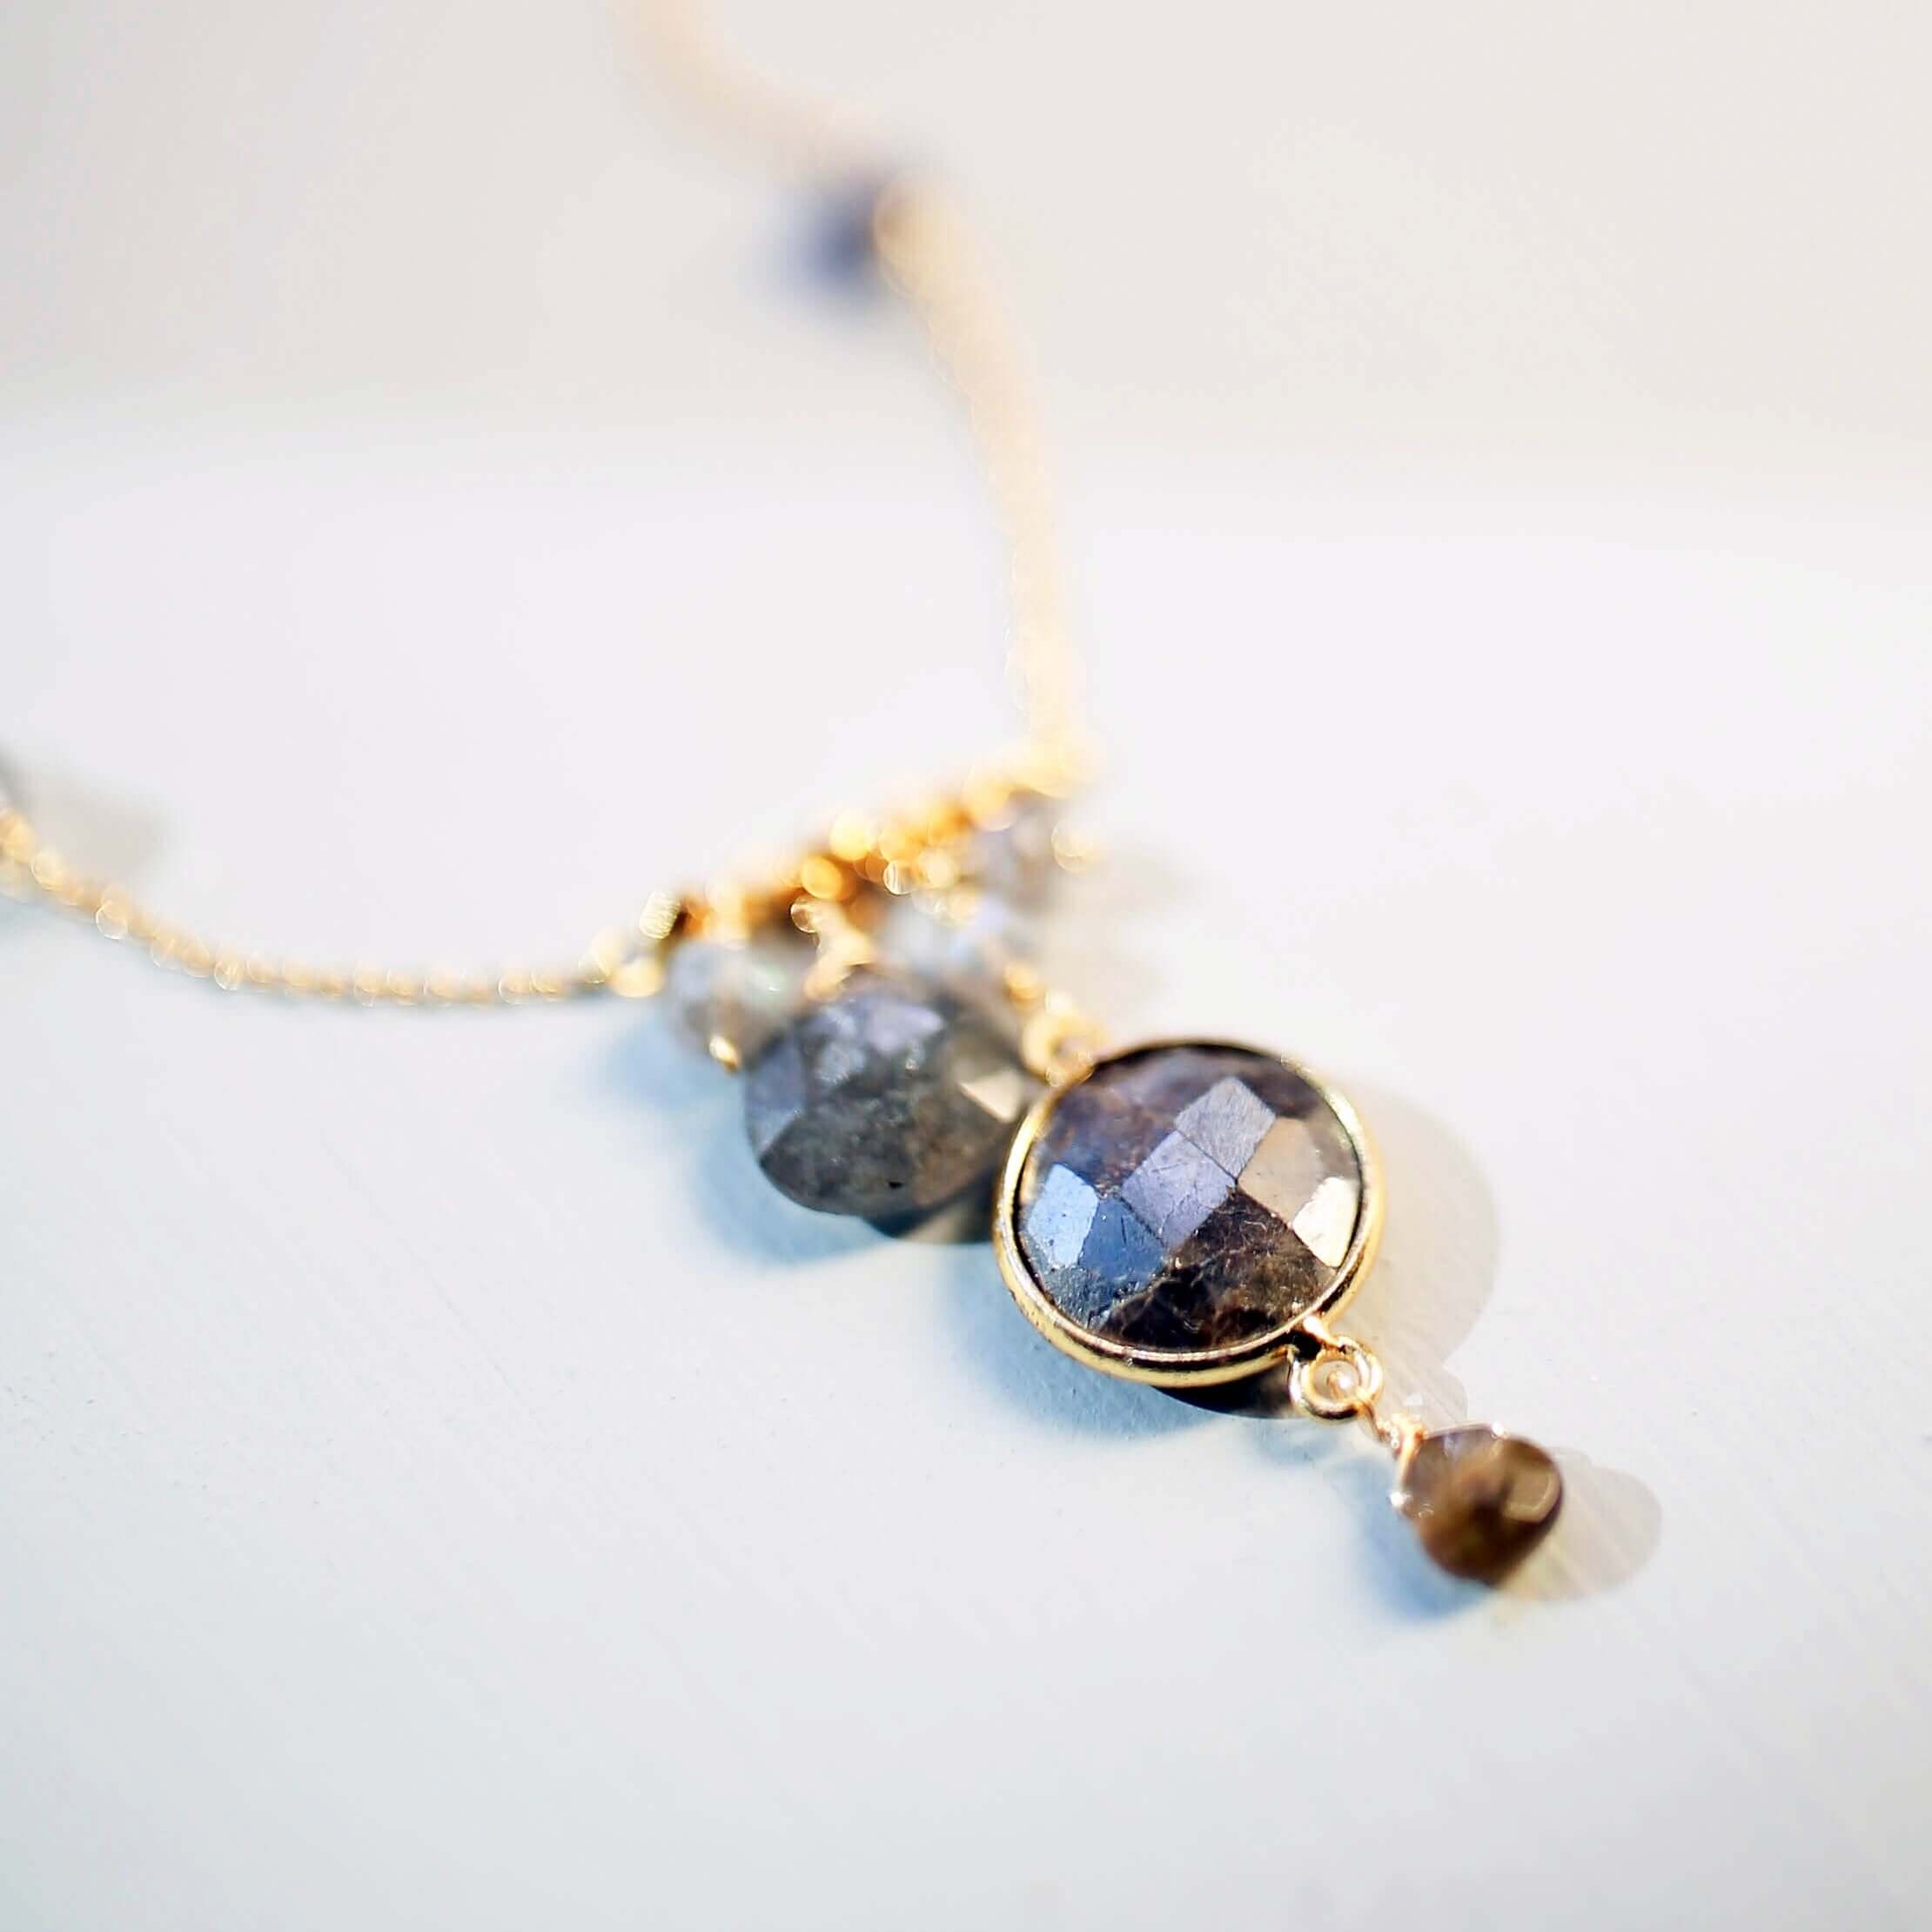 Elegant bezel-set labradorite gemstone necklace with surrounding accents.